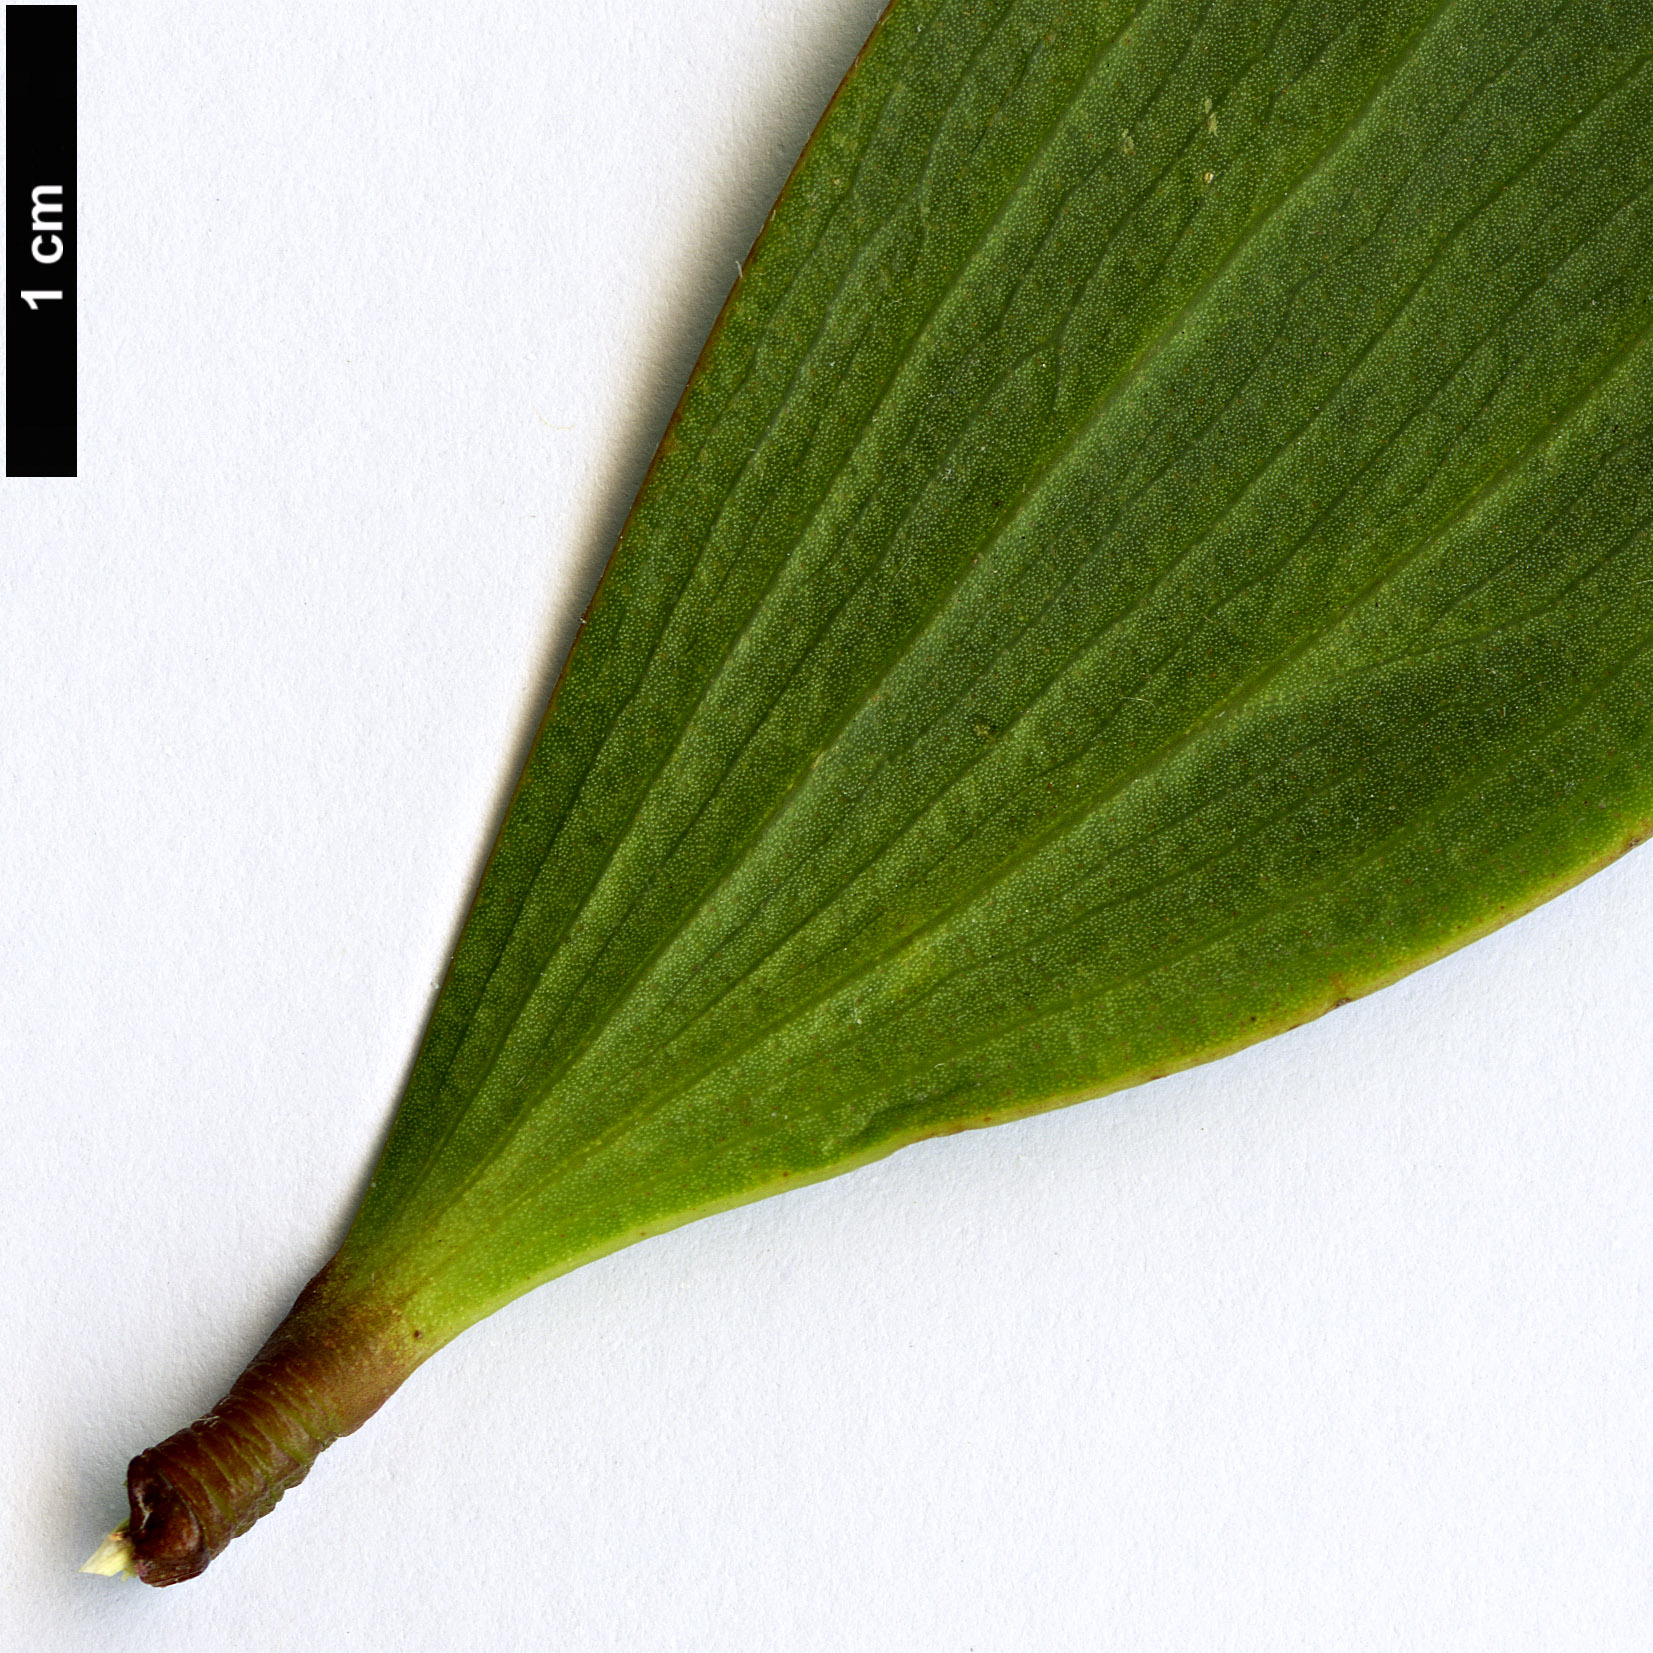 High resolution image: Family: Fabaceae - Genus: Acacia - Taxon: longifolia - SpeciesSub: subsp. sophorae